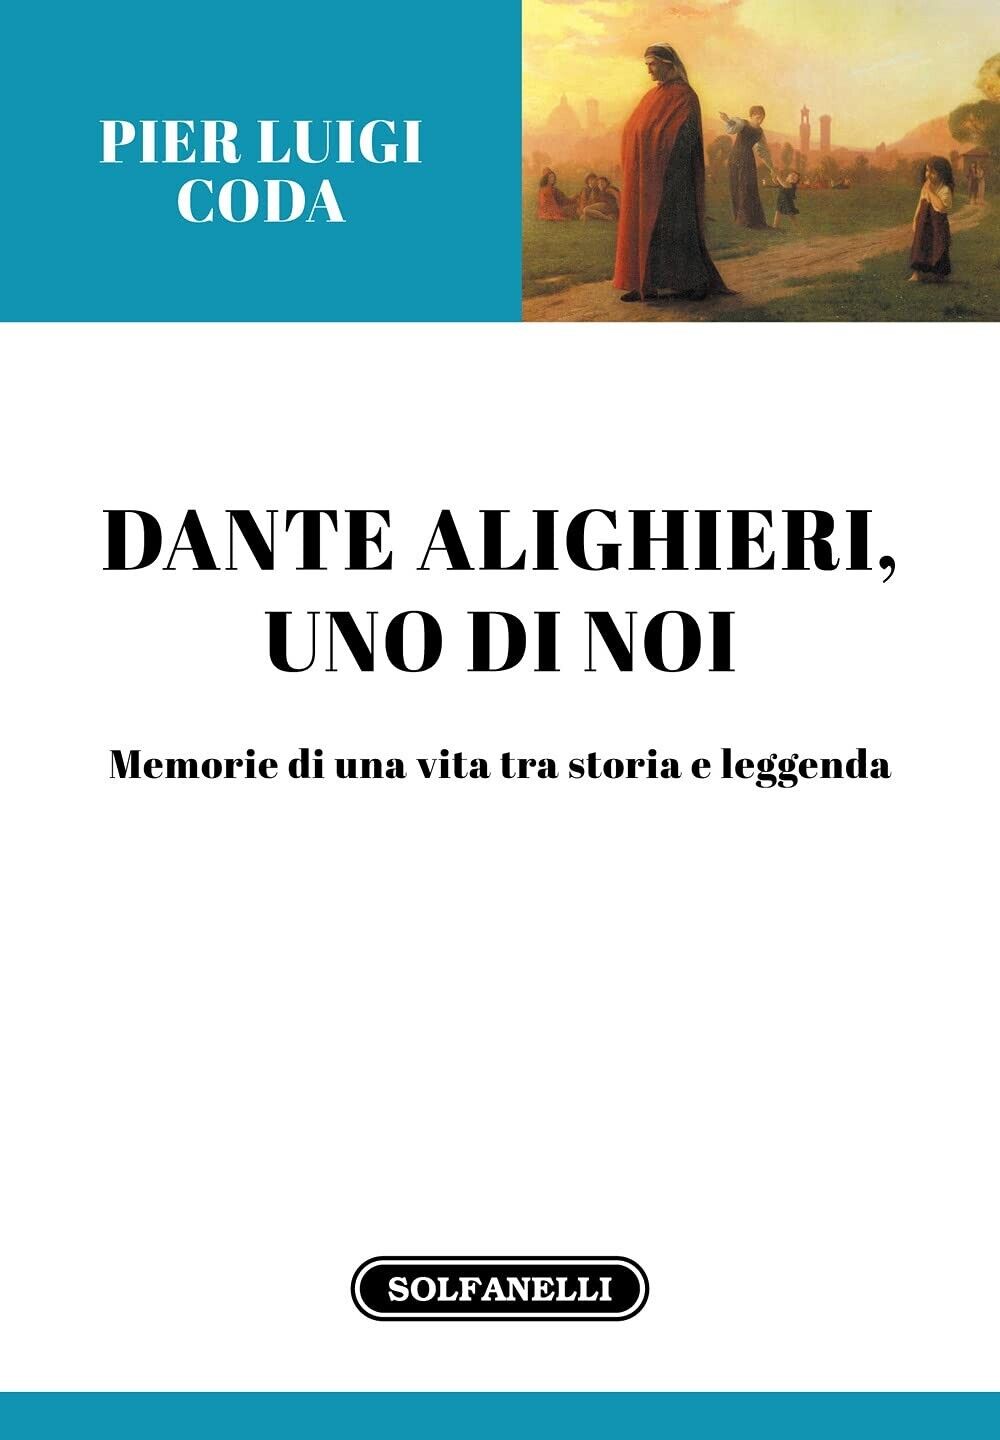  Dante Alighieri, uno di noi. Memorie di una vita tra storia e leggenda di Pier libro usato